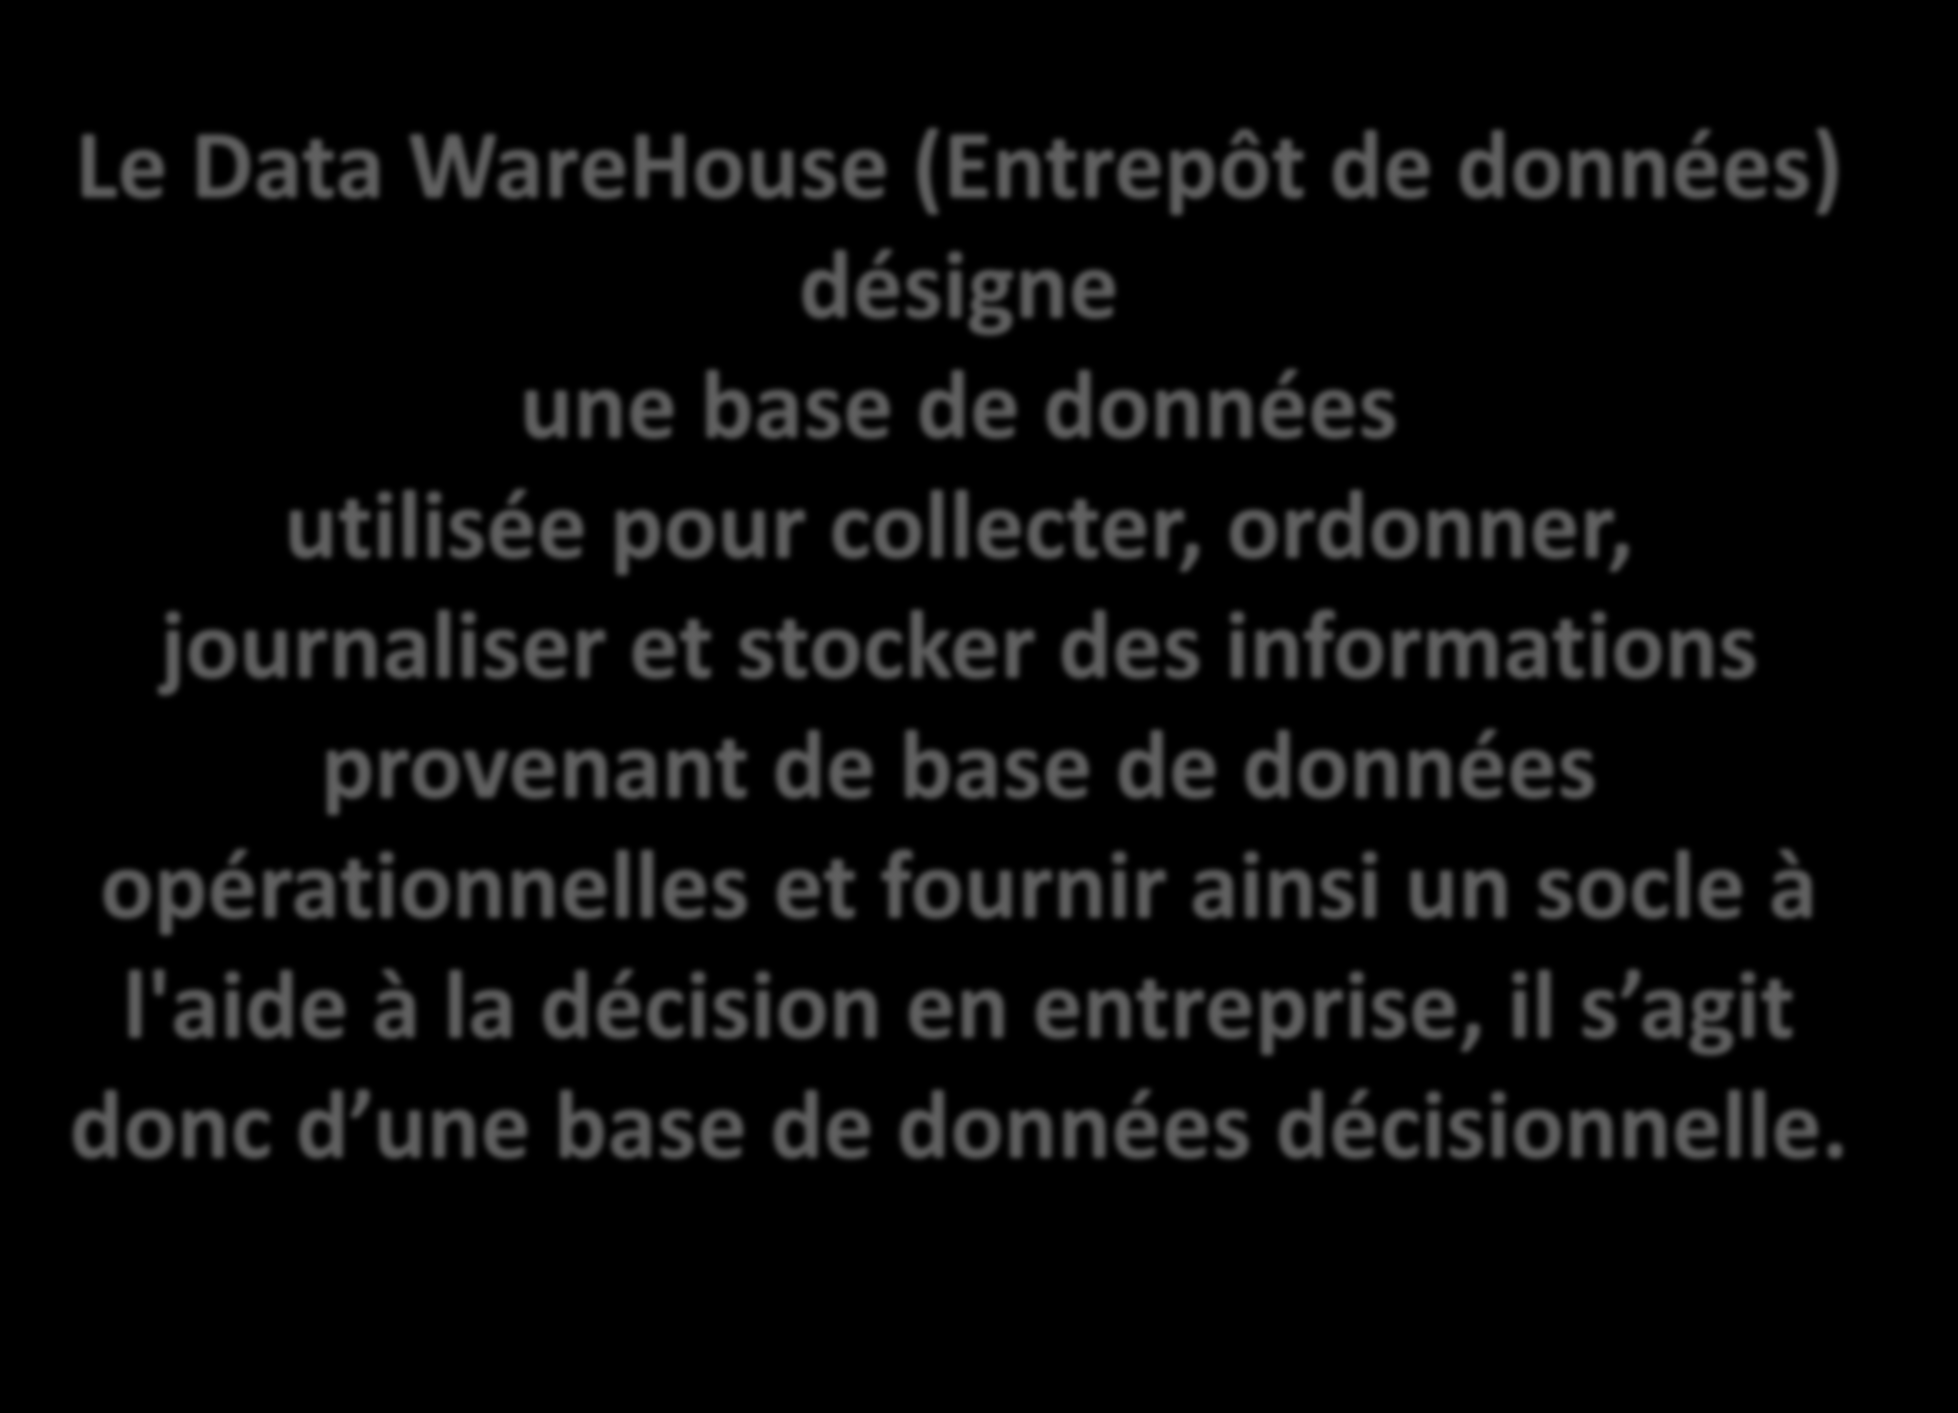 Le Data WareHouse (Entrepôt de données) désigne une base de données utilisée pour collecter, ordonner, journaliser et stocker des informations